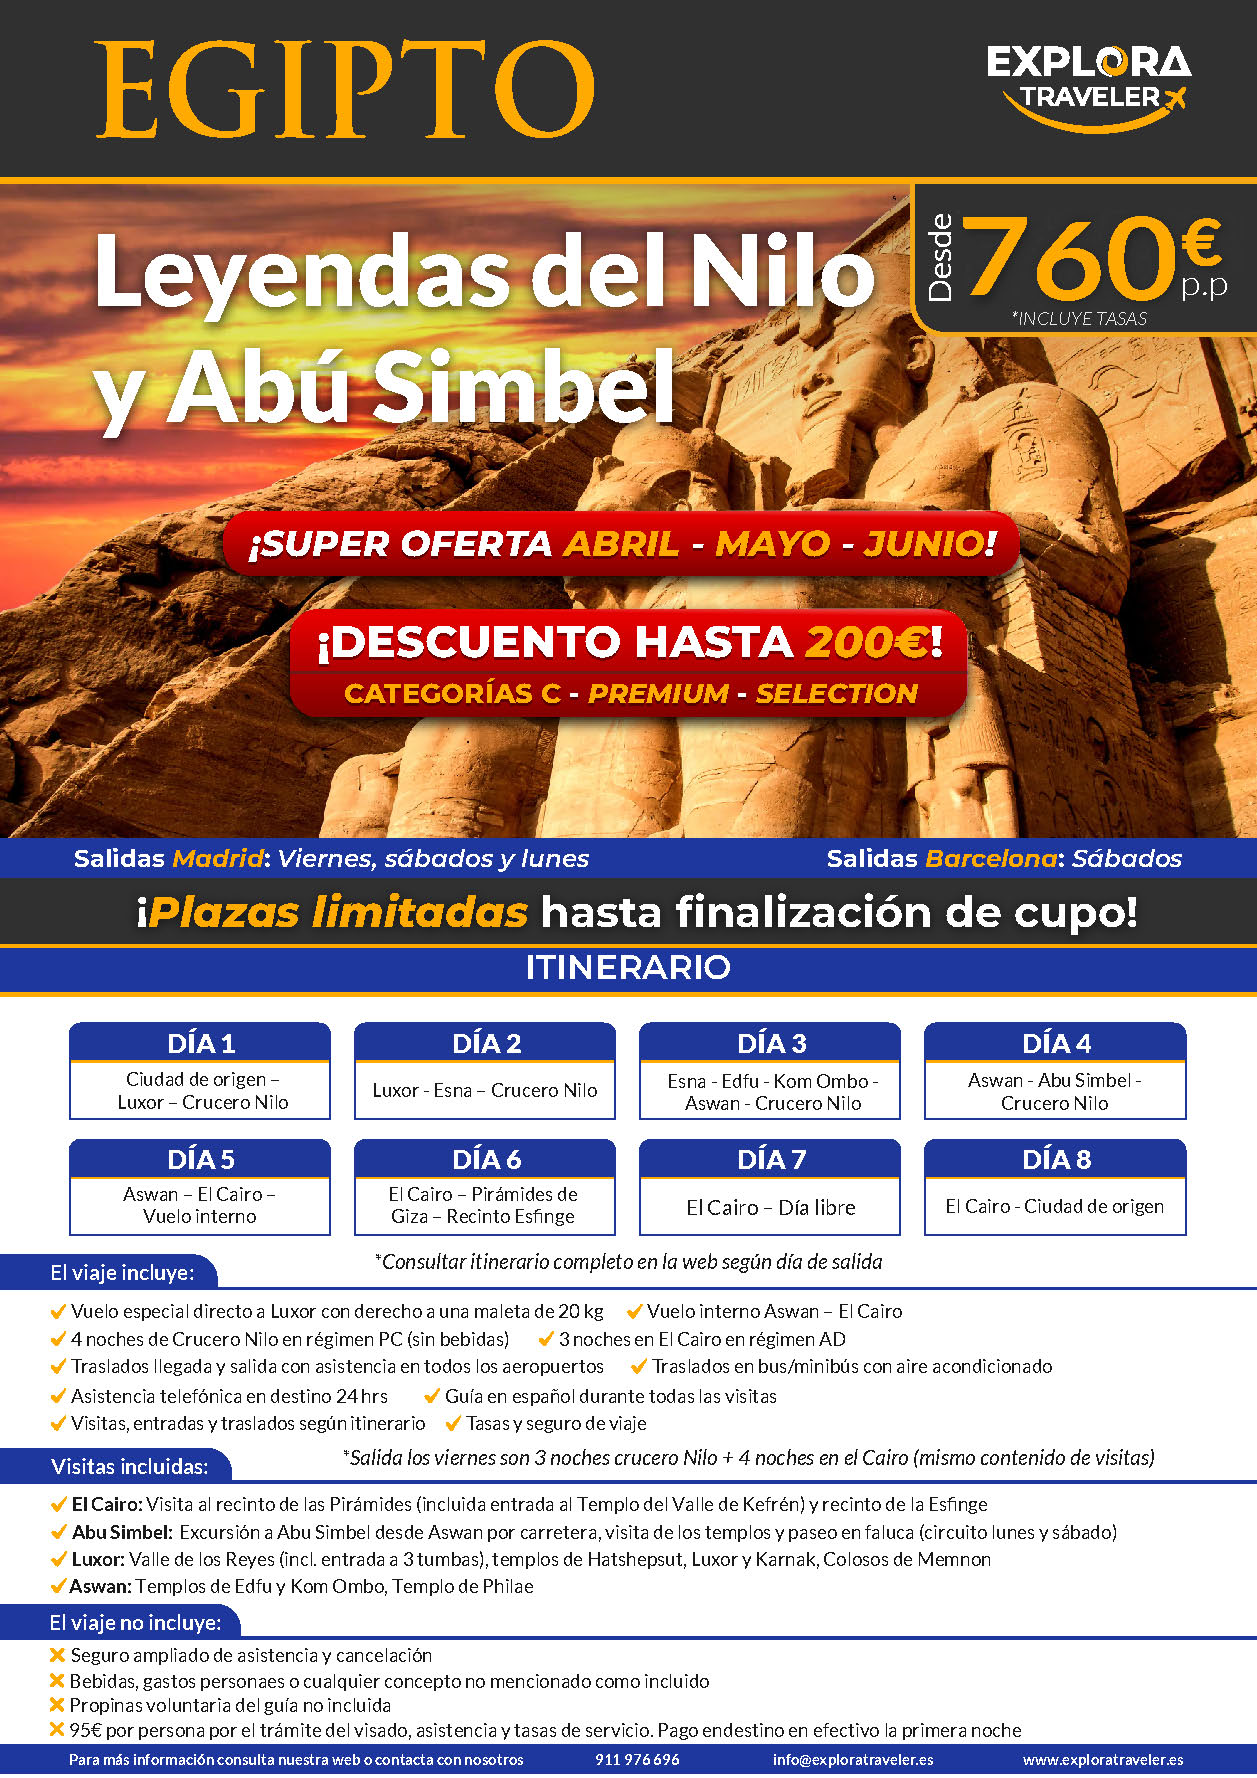 Oferta Explora Traveler Egipto Charter Leyendas del Nilo y Abu Simbel 8 dias salidas abril mayo junio 2024 vuelo directo desde Madrid y Barcelona